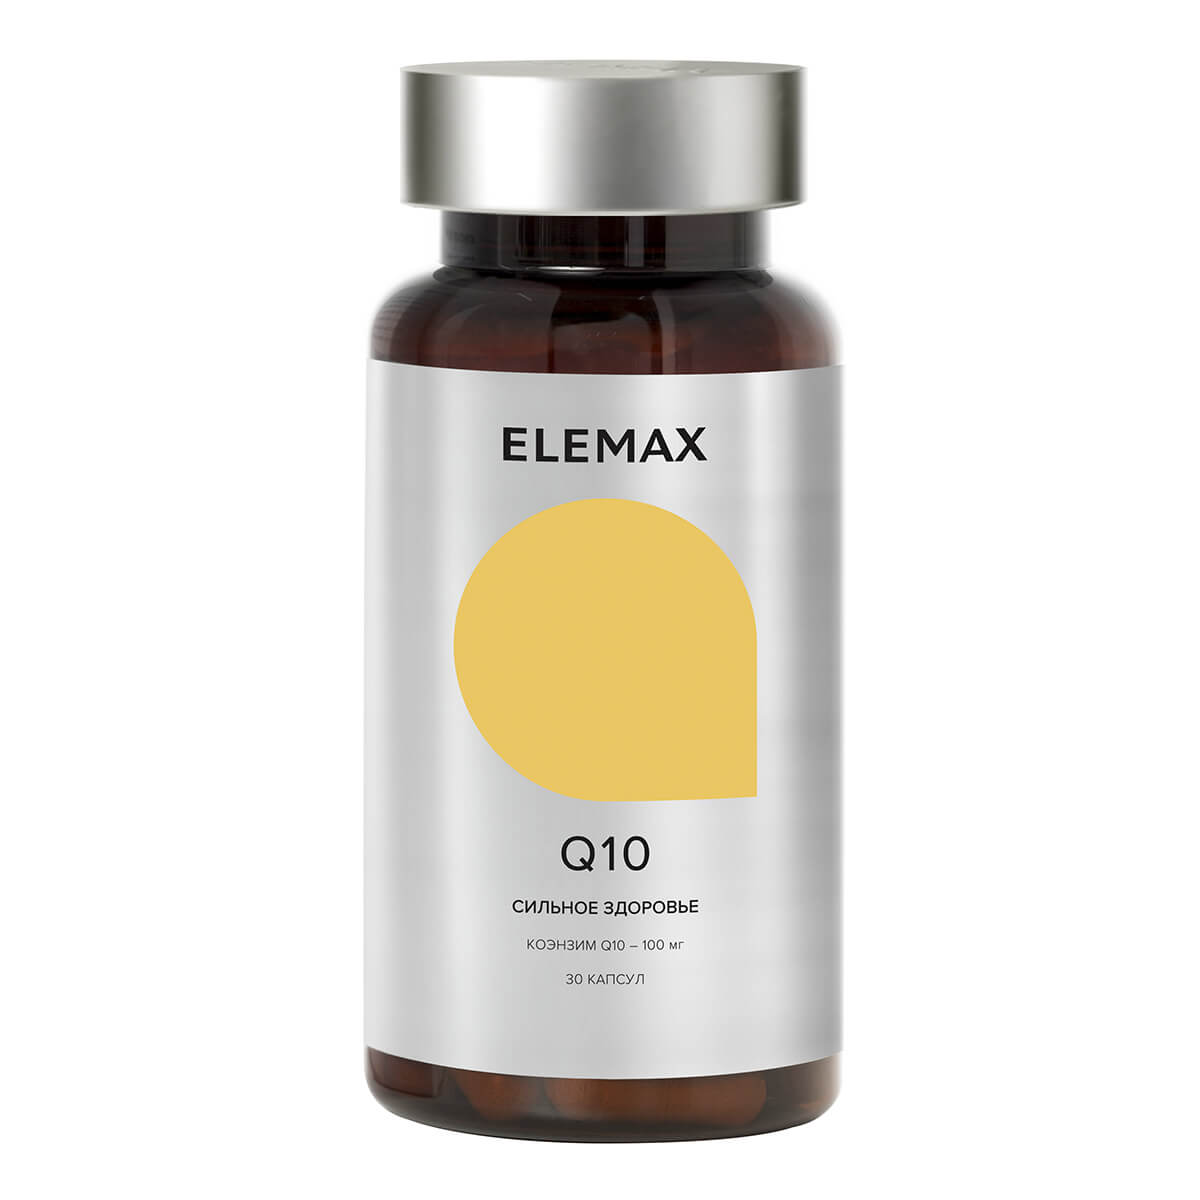 Биологически активная добавка к пище "Q10"капсулы 30 шт по 300 мг, Elemax